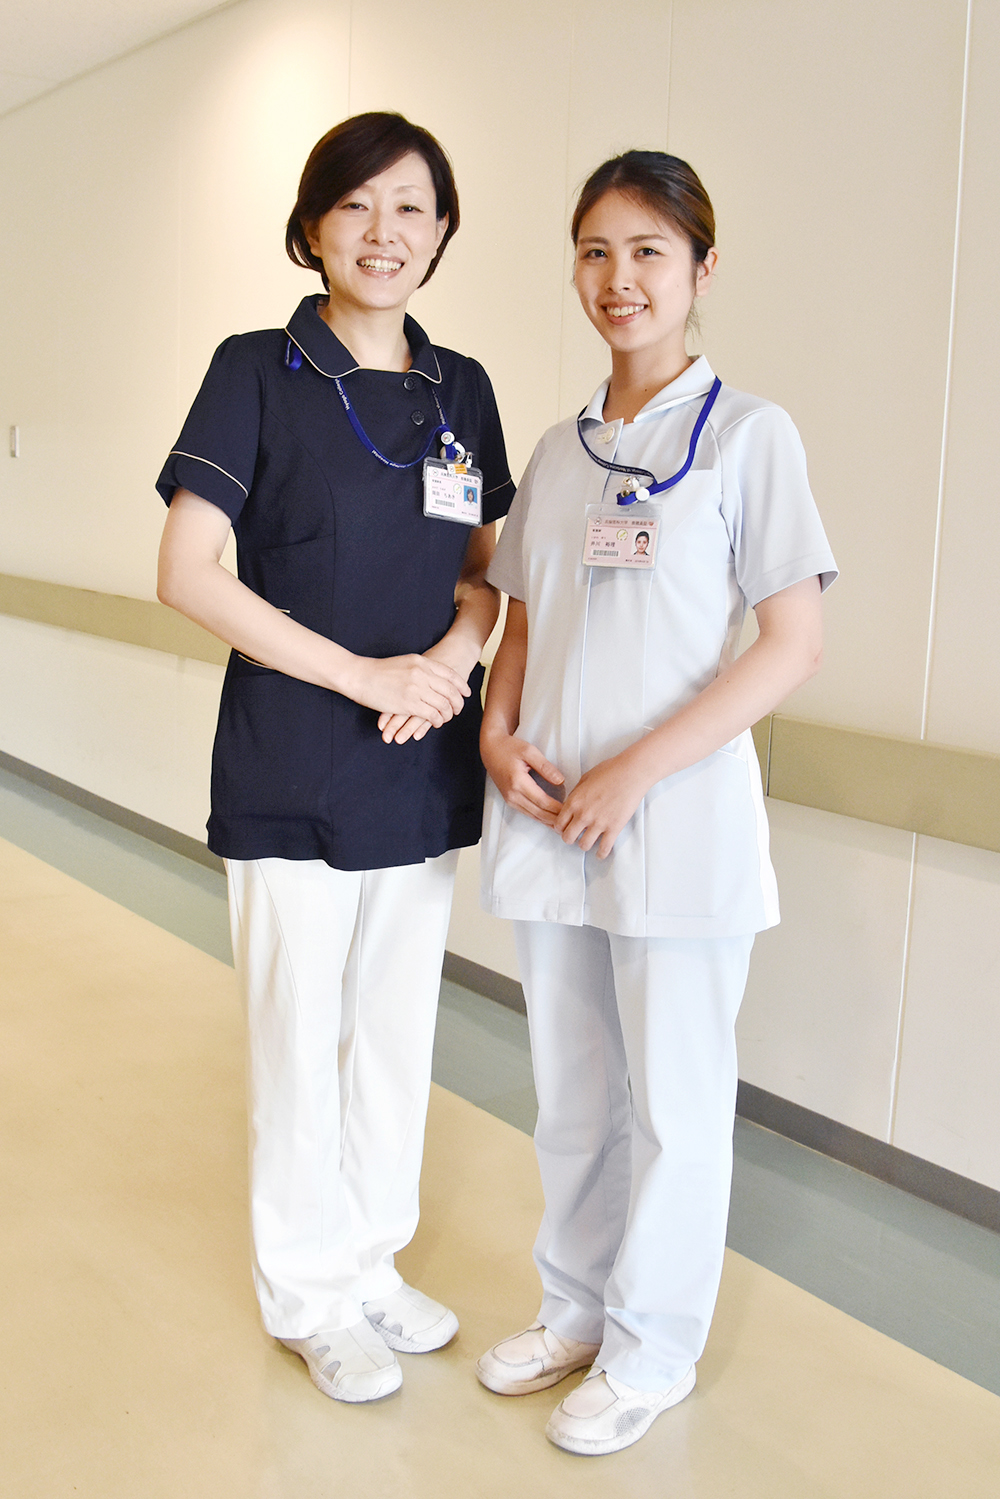 看護師と放射線技師のユニフォームが変わりました 兵庫医科大学病院